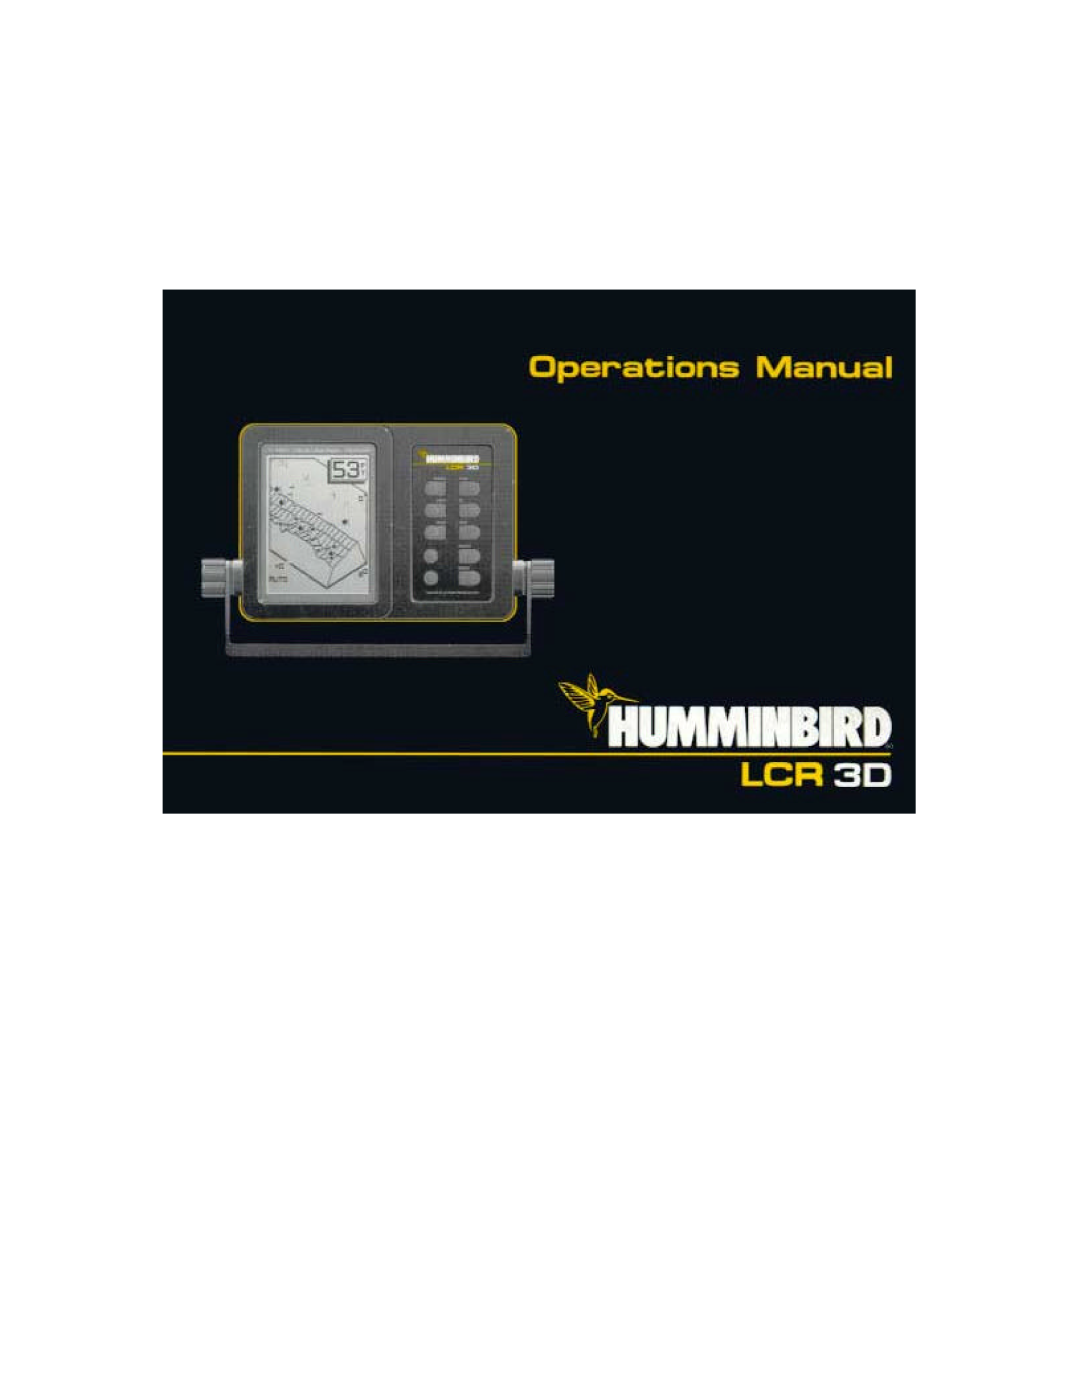 Humminbird LCR 3D manual 